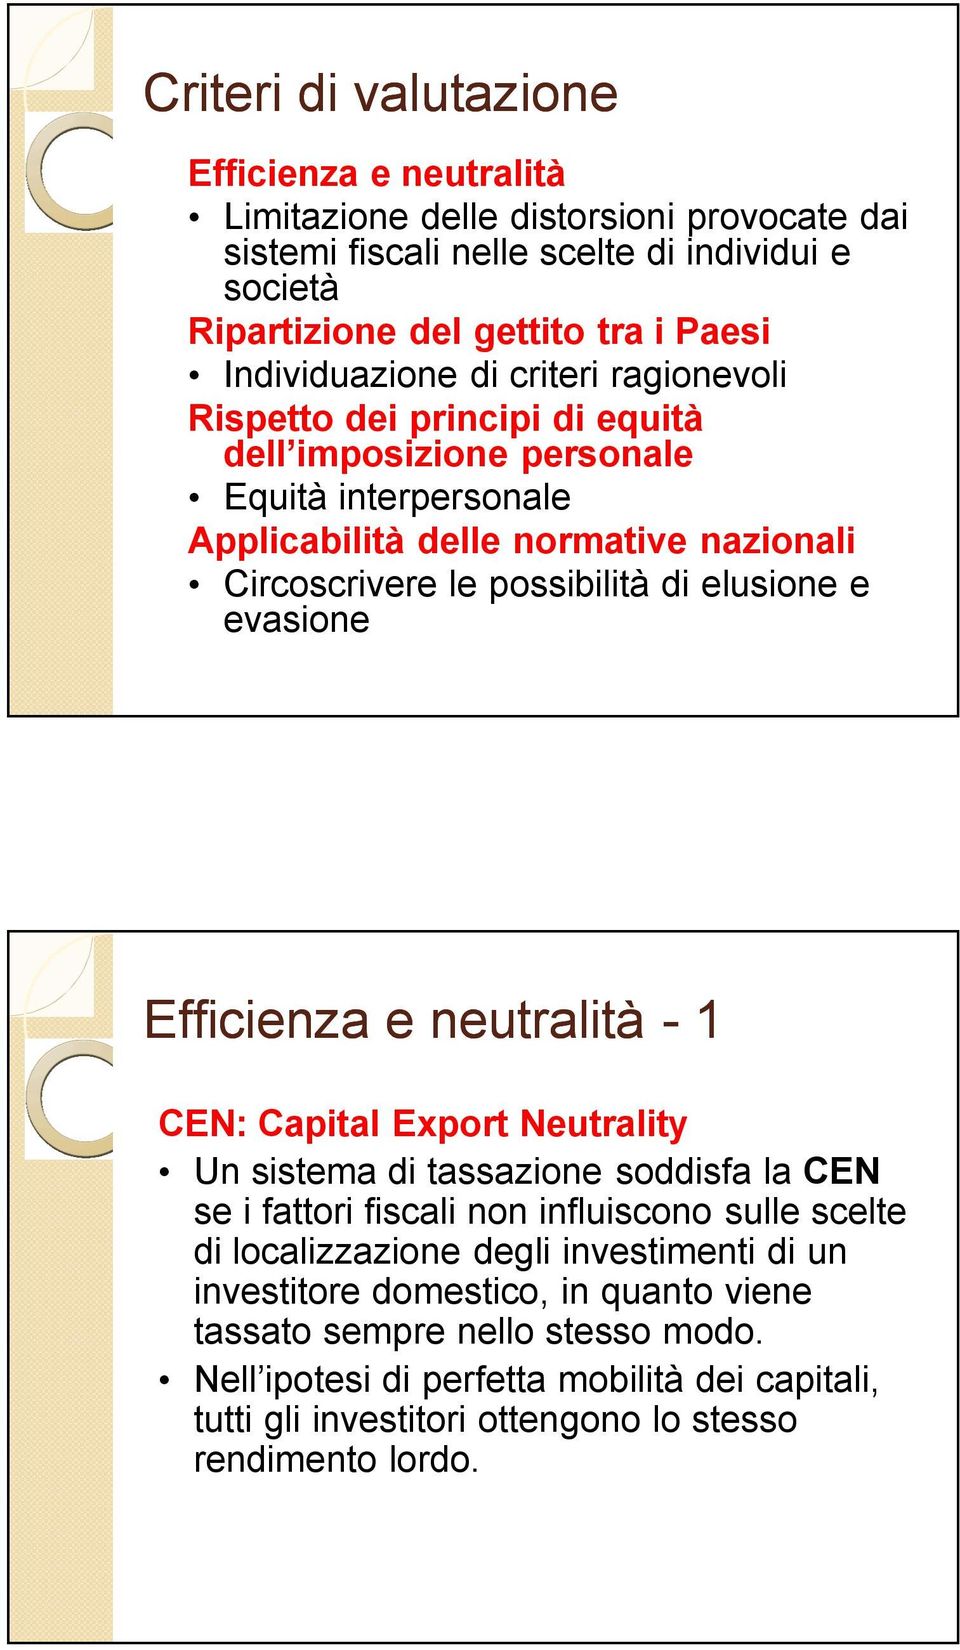 elusione e evasione Efficienza e neutralità - 1 CEN: Capital Export Neutrality Un sistema di tassazione soddisfa la CEN se i fattori fiscali non influiscono sulle scelte di localizzazione